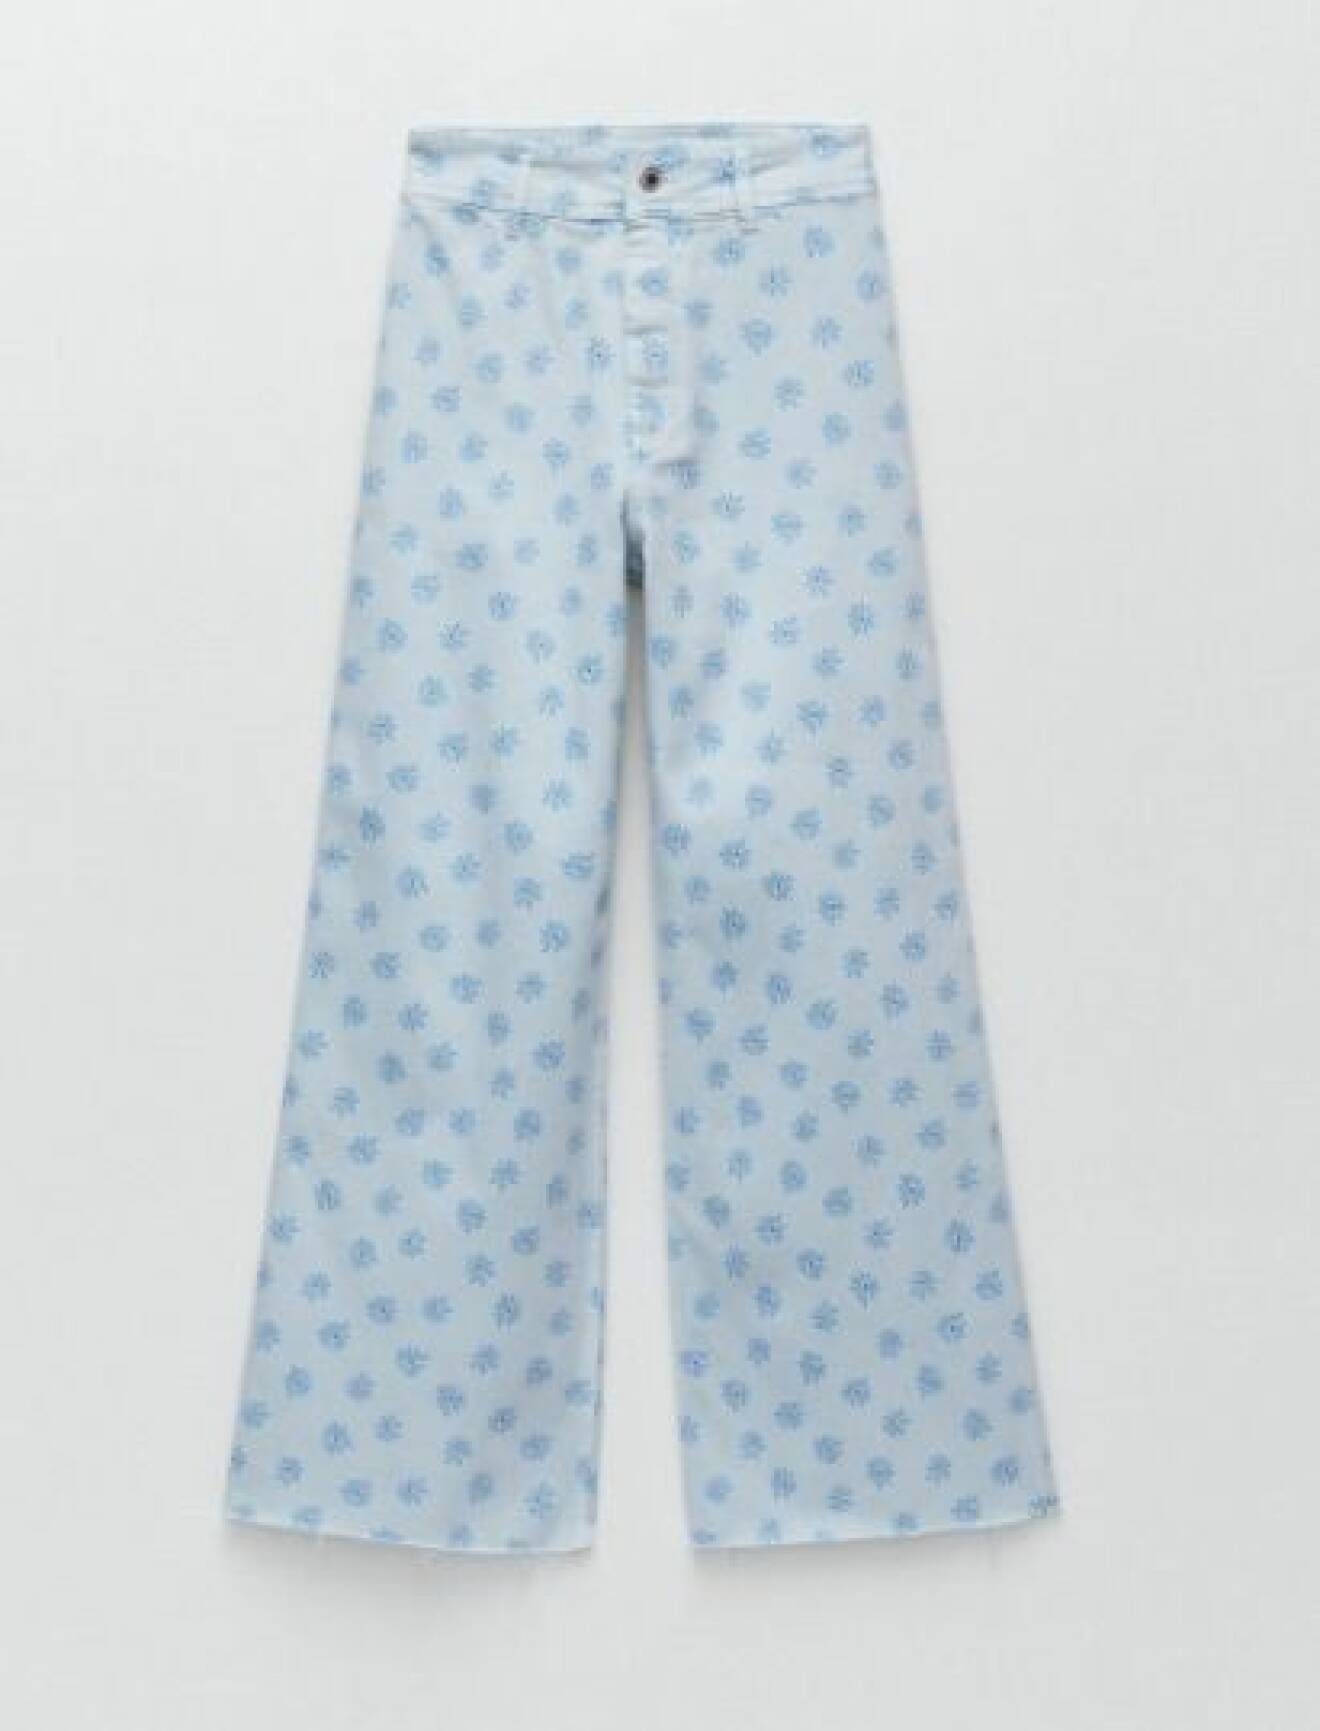 Ljusblå jeans med blå blommor på. Raka jeans med vida ben från Zara.